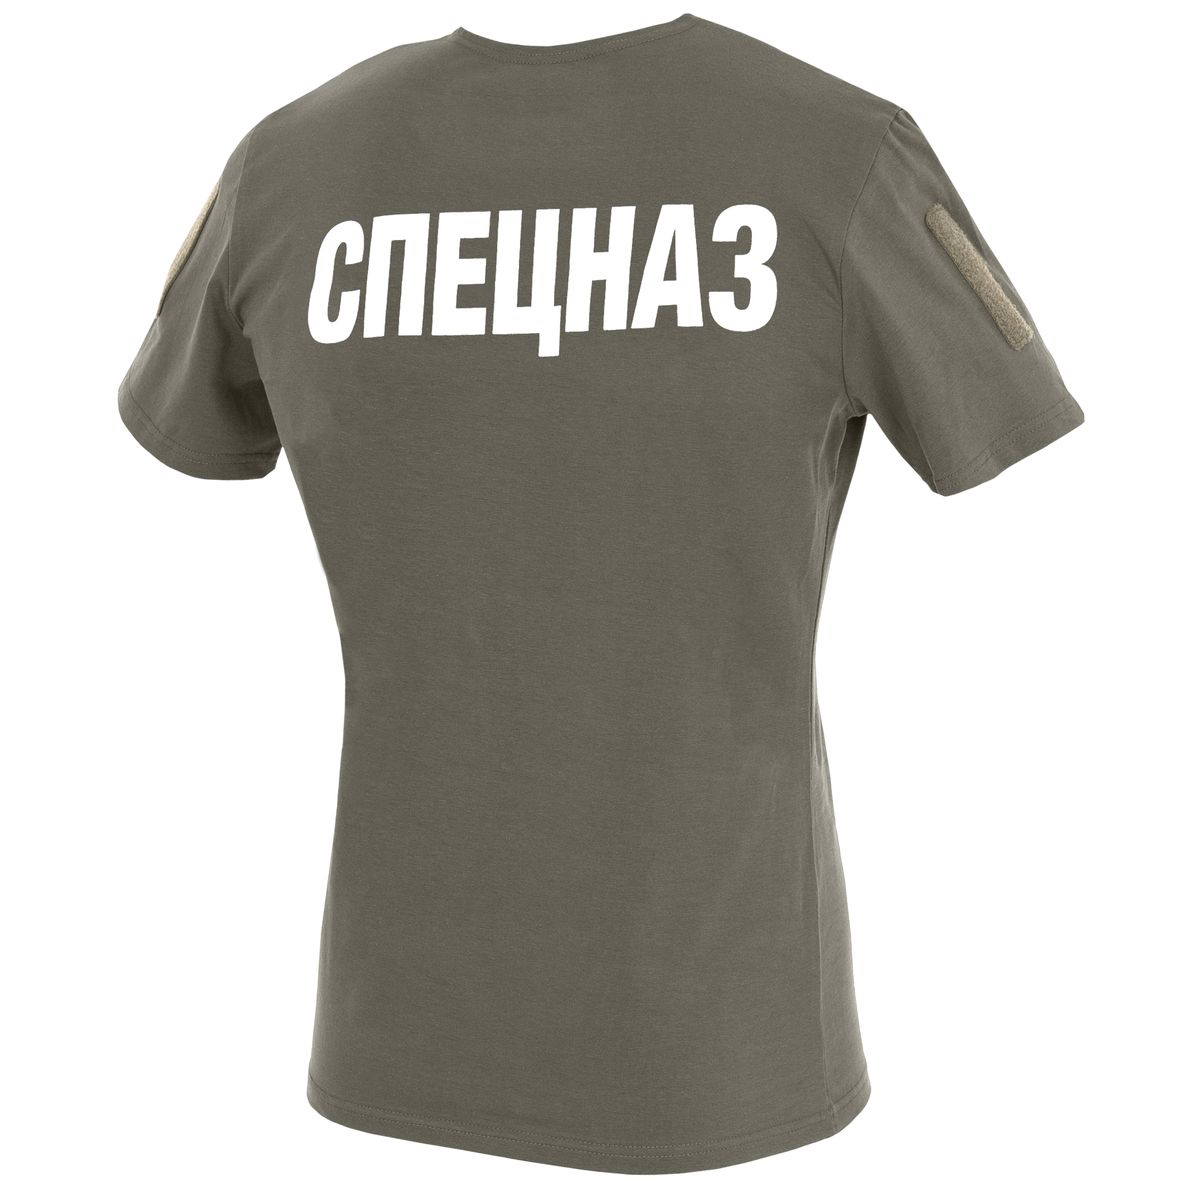 Saince1974 тактическая футболка